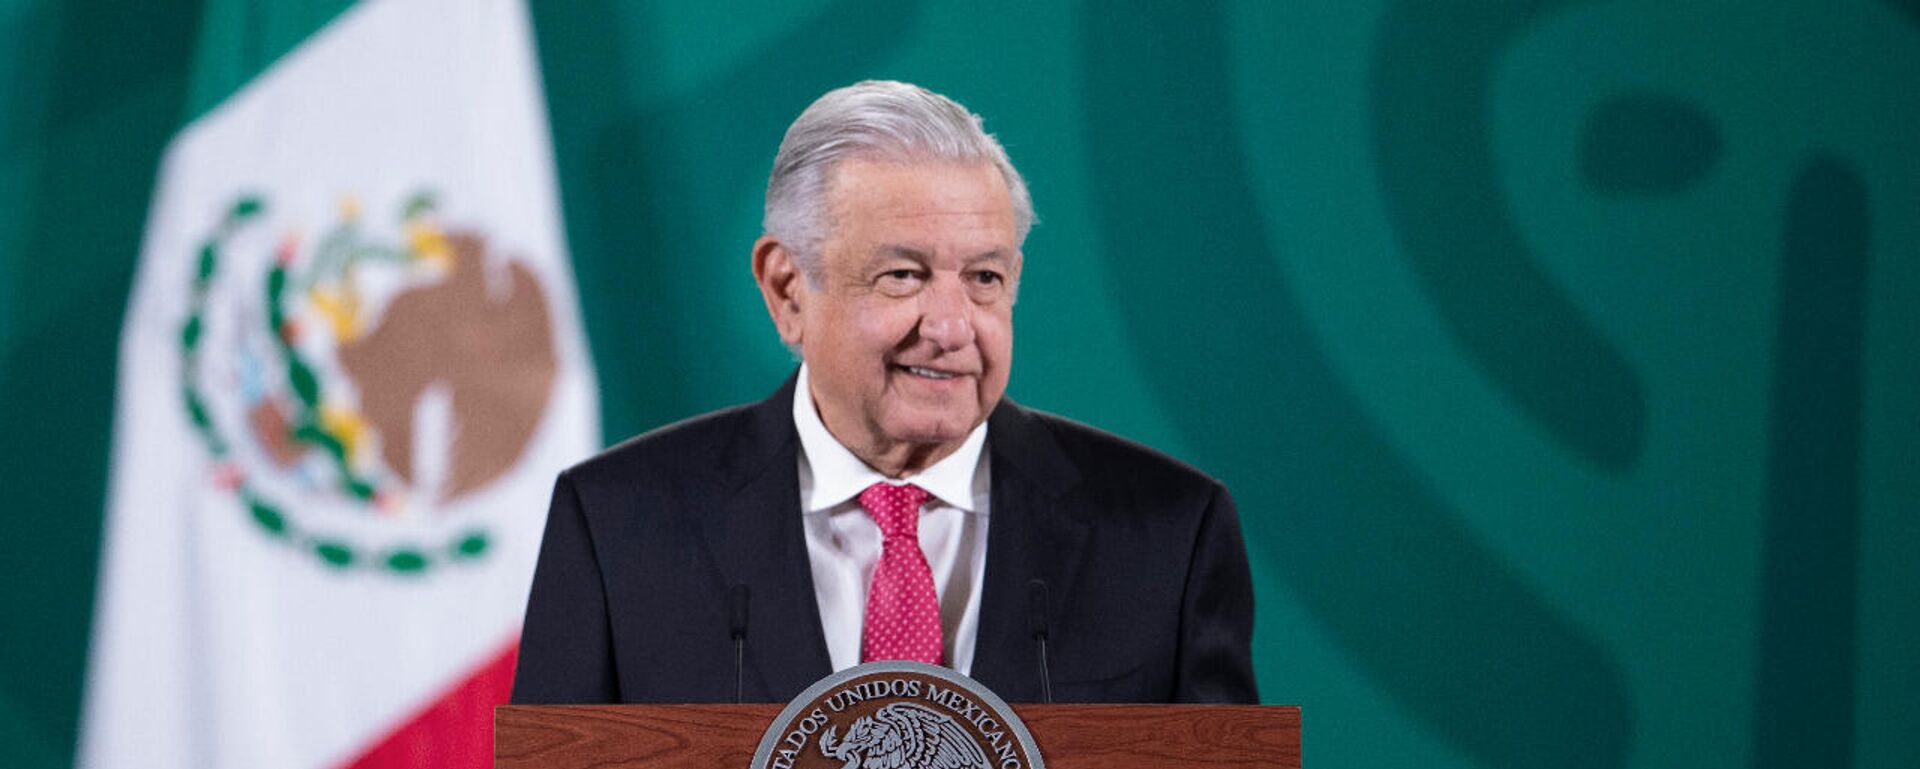 Andrés Manuel López Obrador, presidente de México - Sputnik Mundo, 1920, 15.11.2021